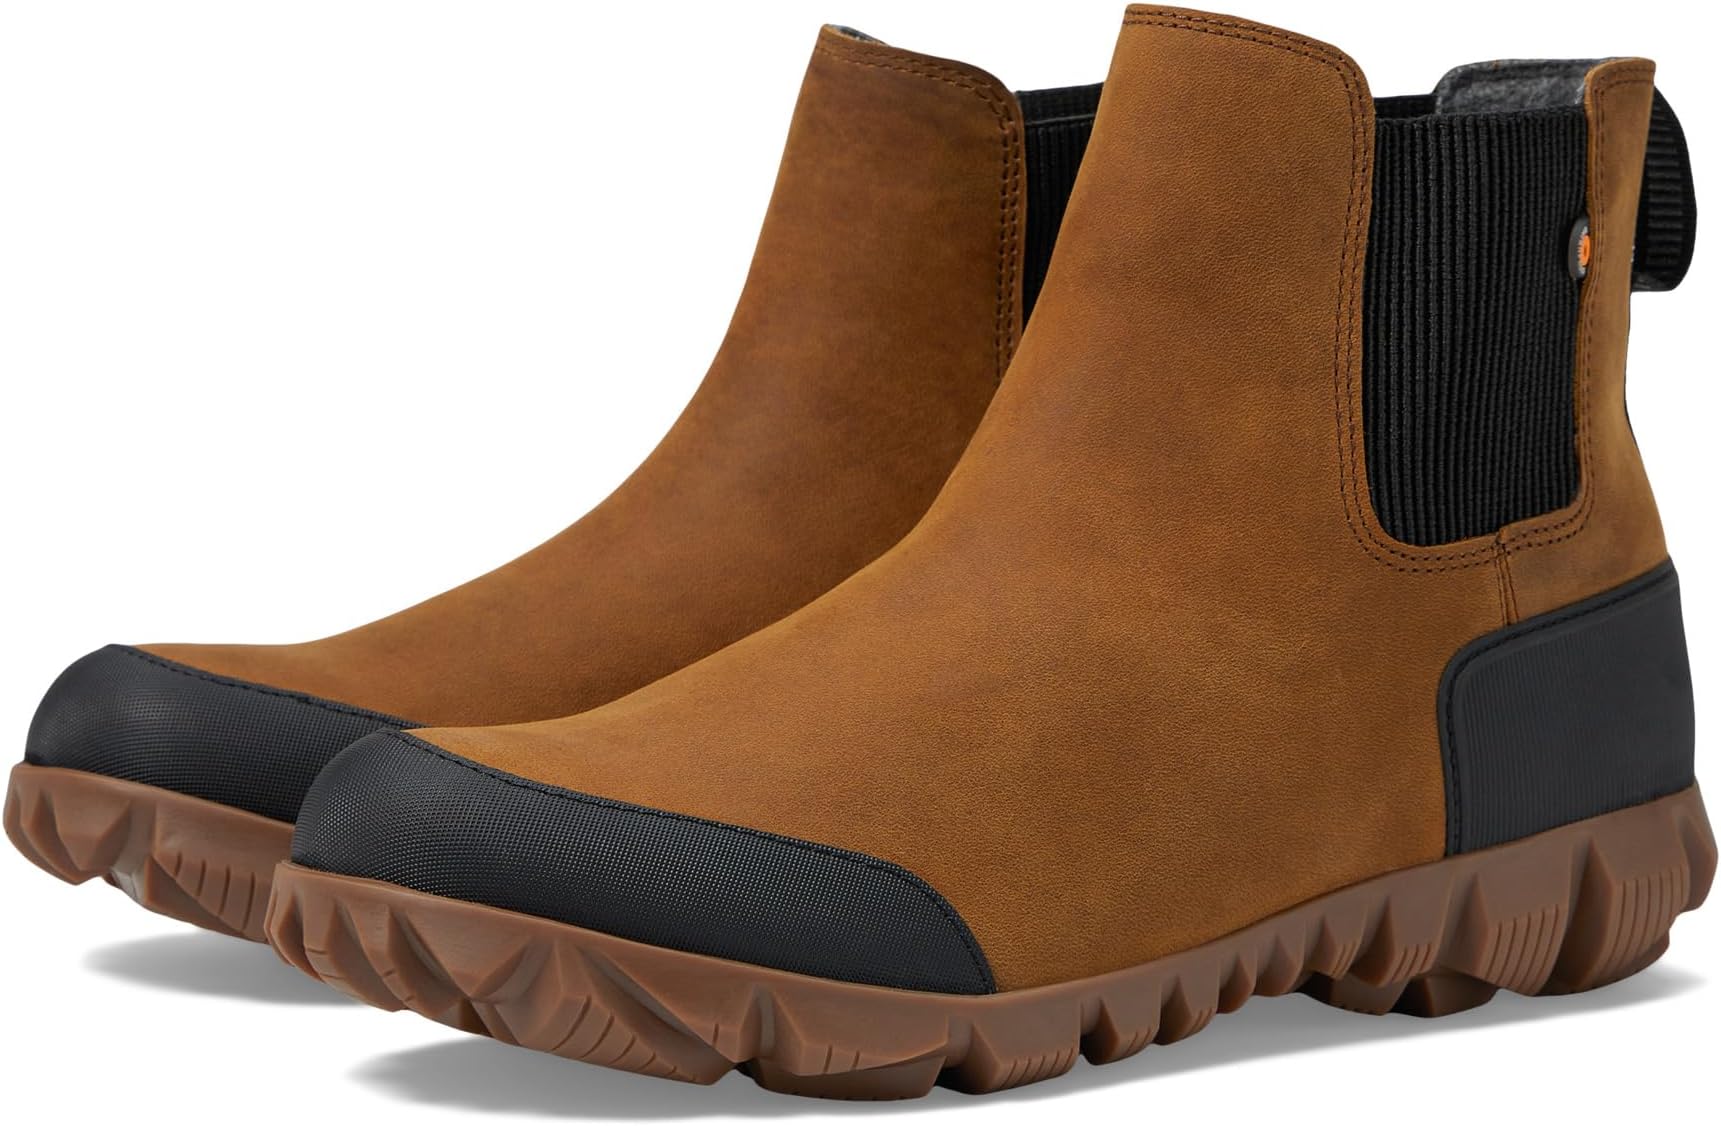 Зимние ботинки Arcata Urban Leather Chelsea Bogs, цвет Carmel/Amber цена и фото